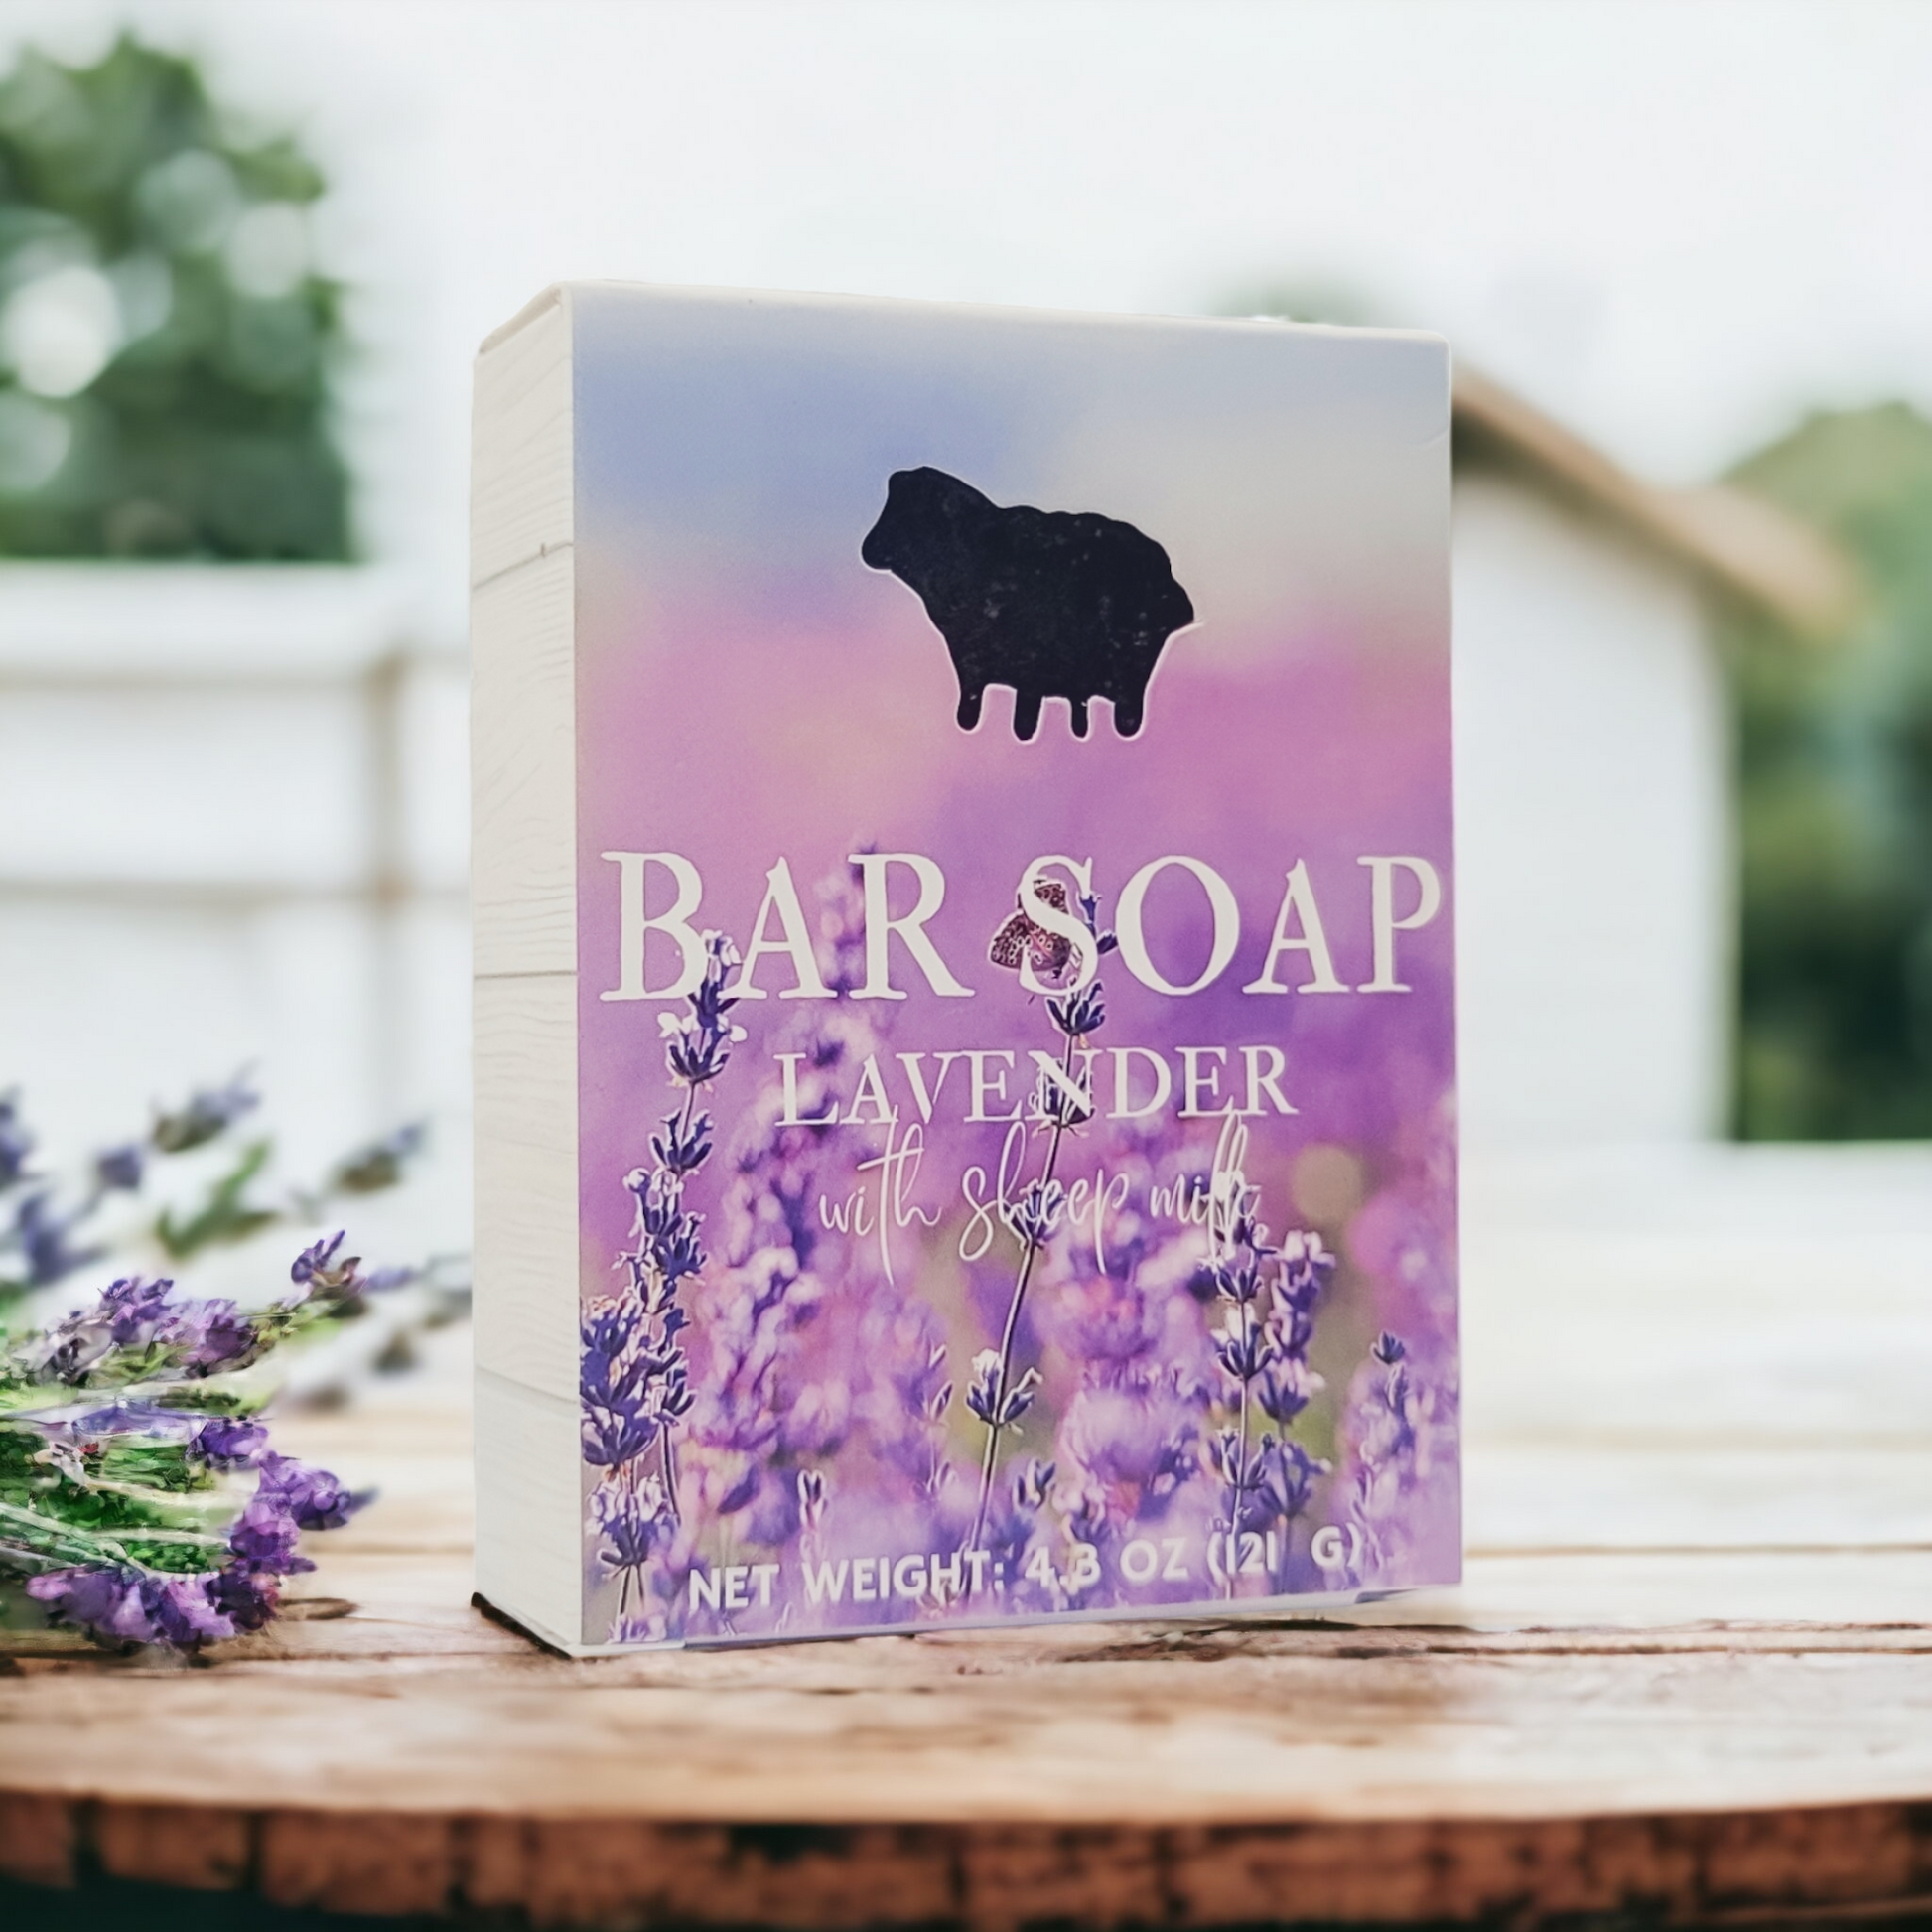 Deep Purple Lavender Goat's Milk Soap